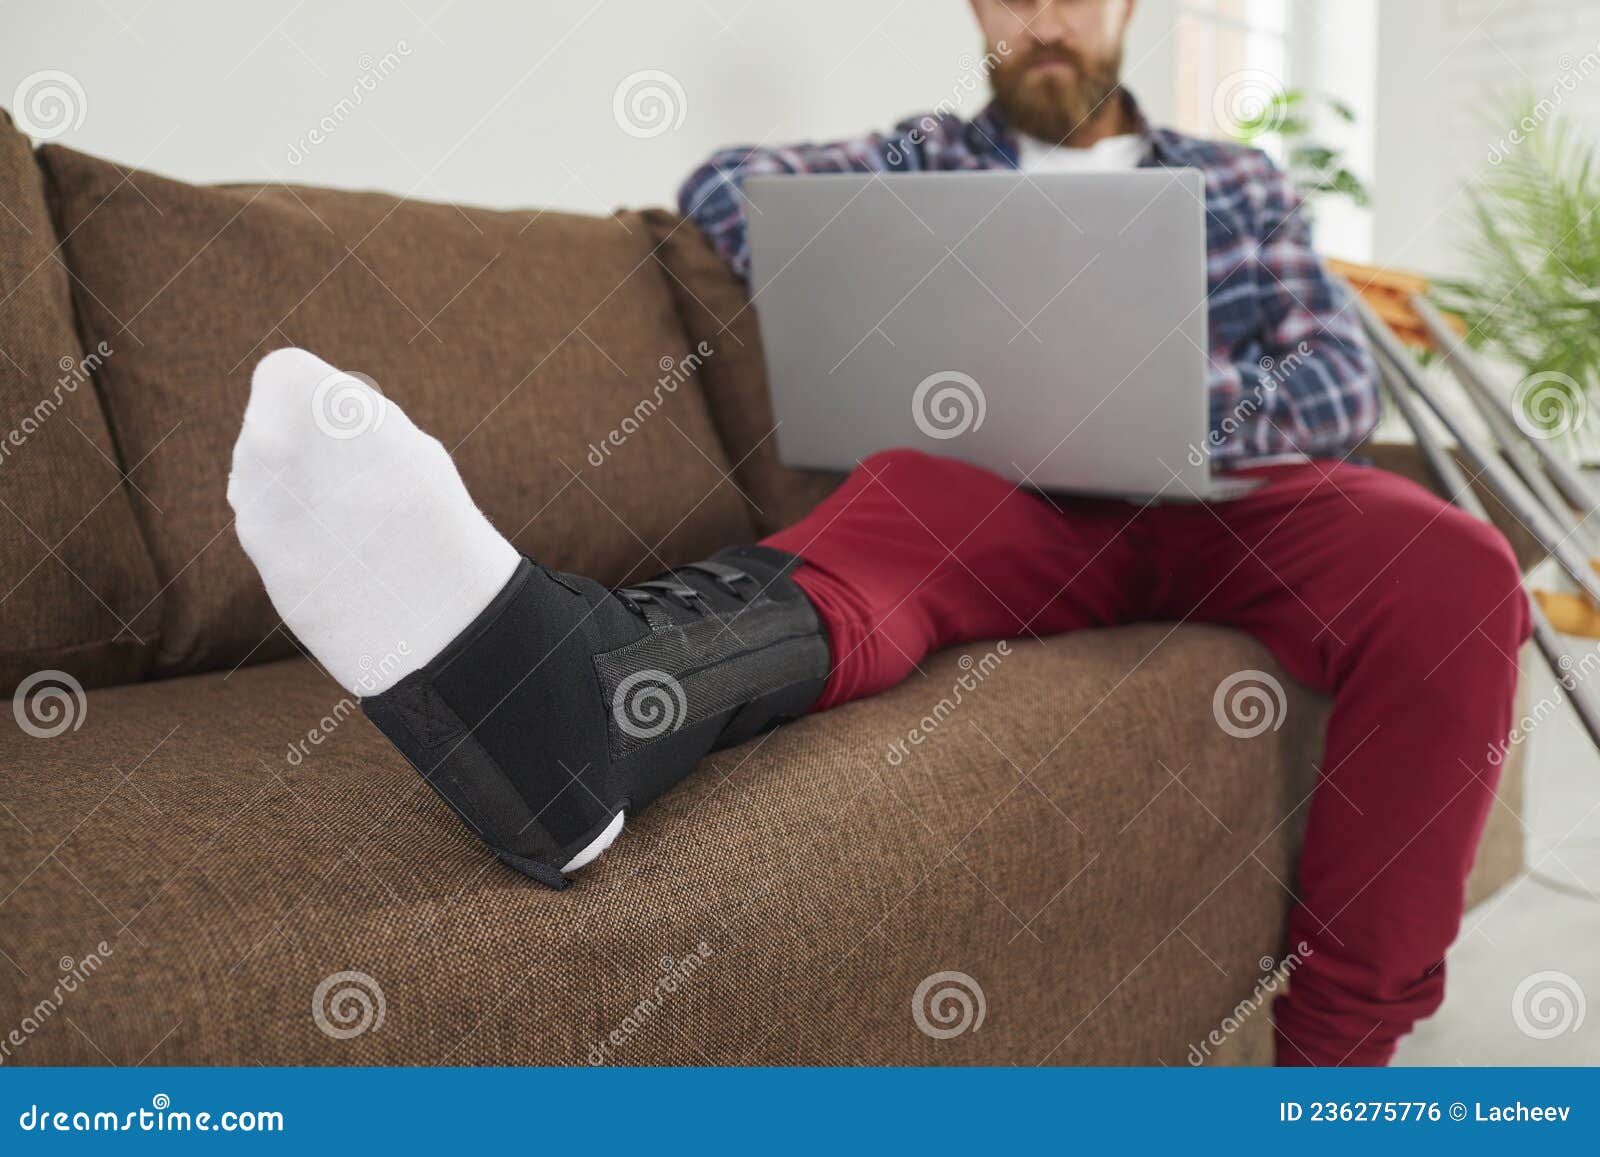 injured man with broken leg work on laptop at home